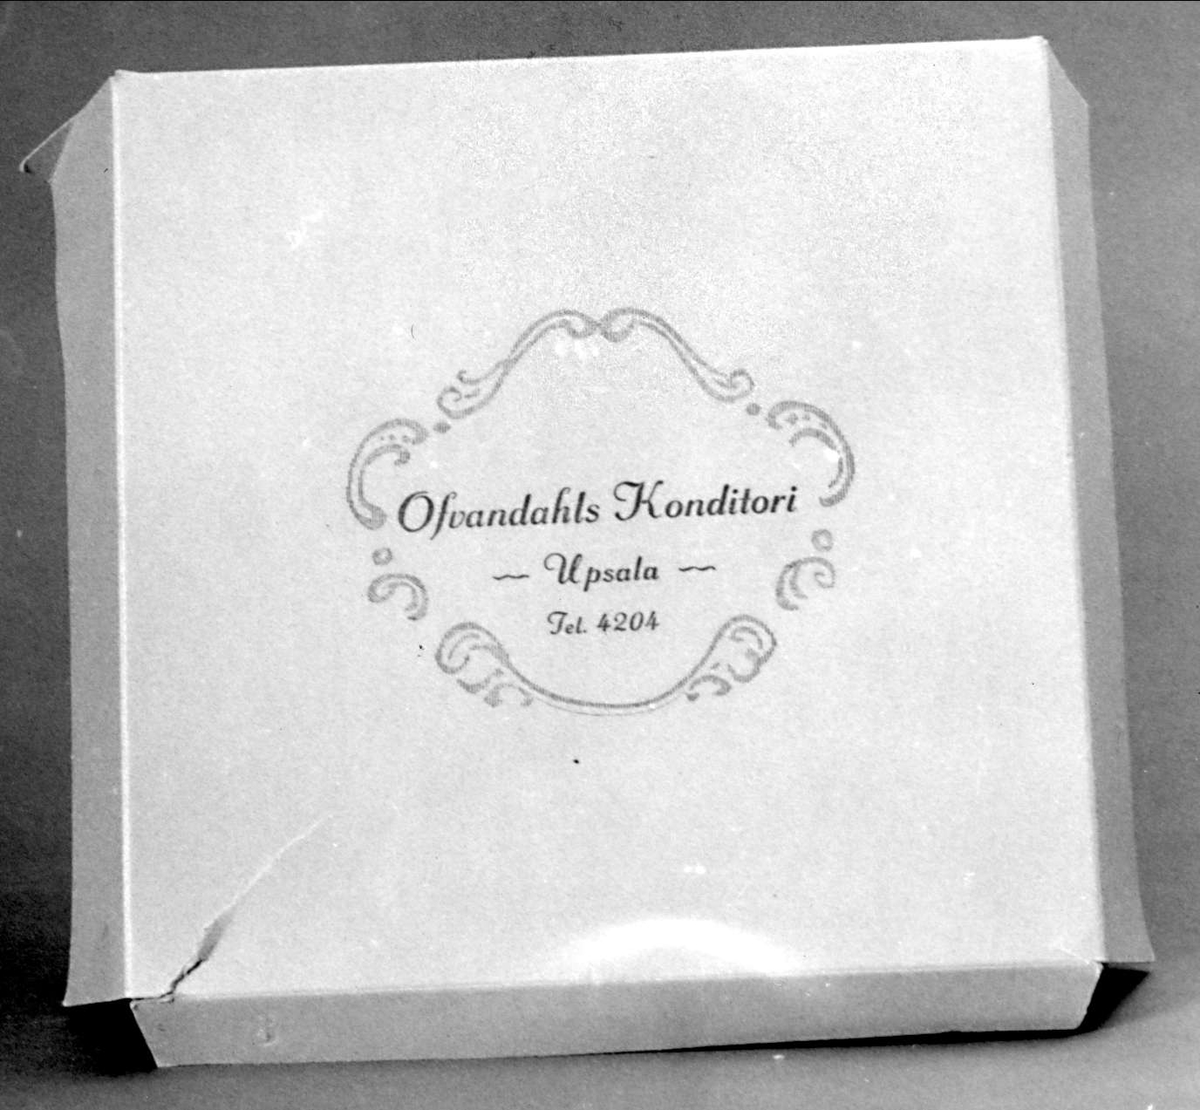 Tårtkartong av vit papp med uppfällbart lick,  blått tryck  "Ofvandahls konditori,  Upsala tel 4204".  Locket gar två breda flikar och en smal.
